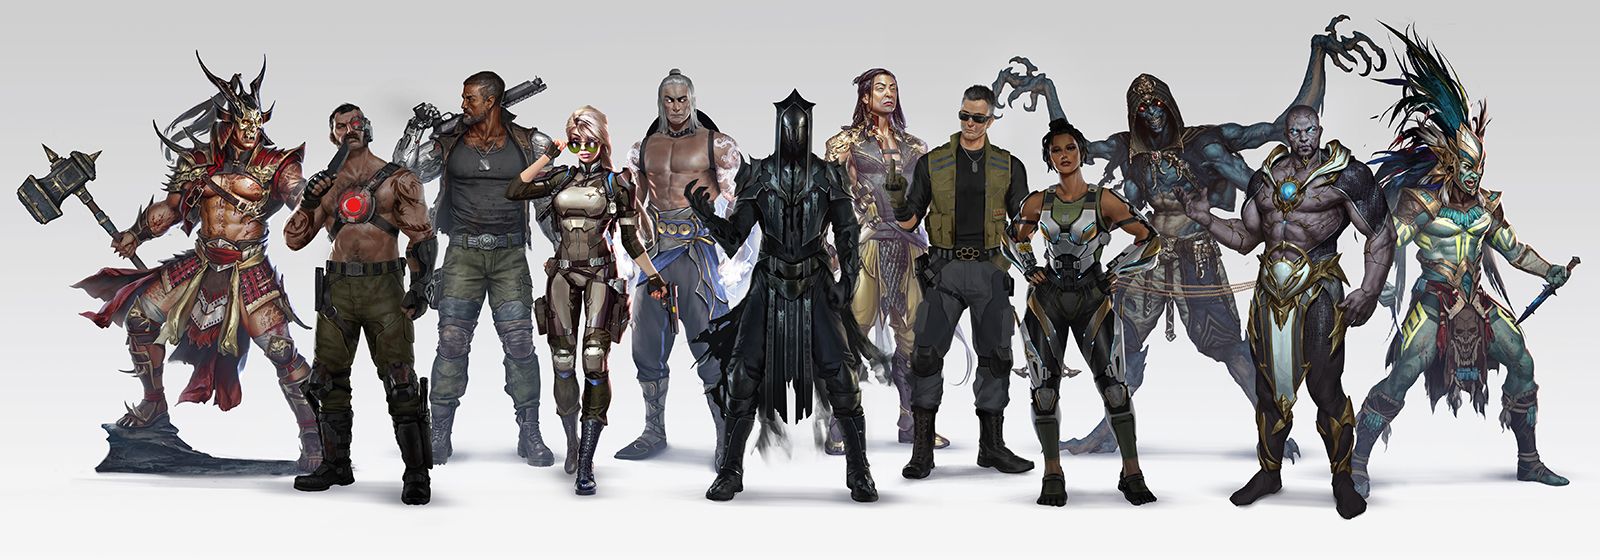 Персонажи Mortal Kombat 11 предоставлены Netherrealm Studios